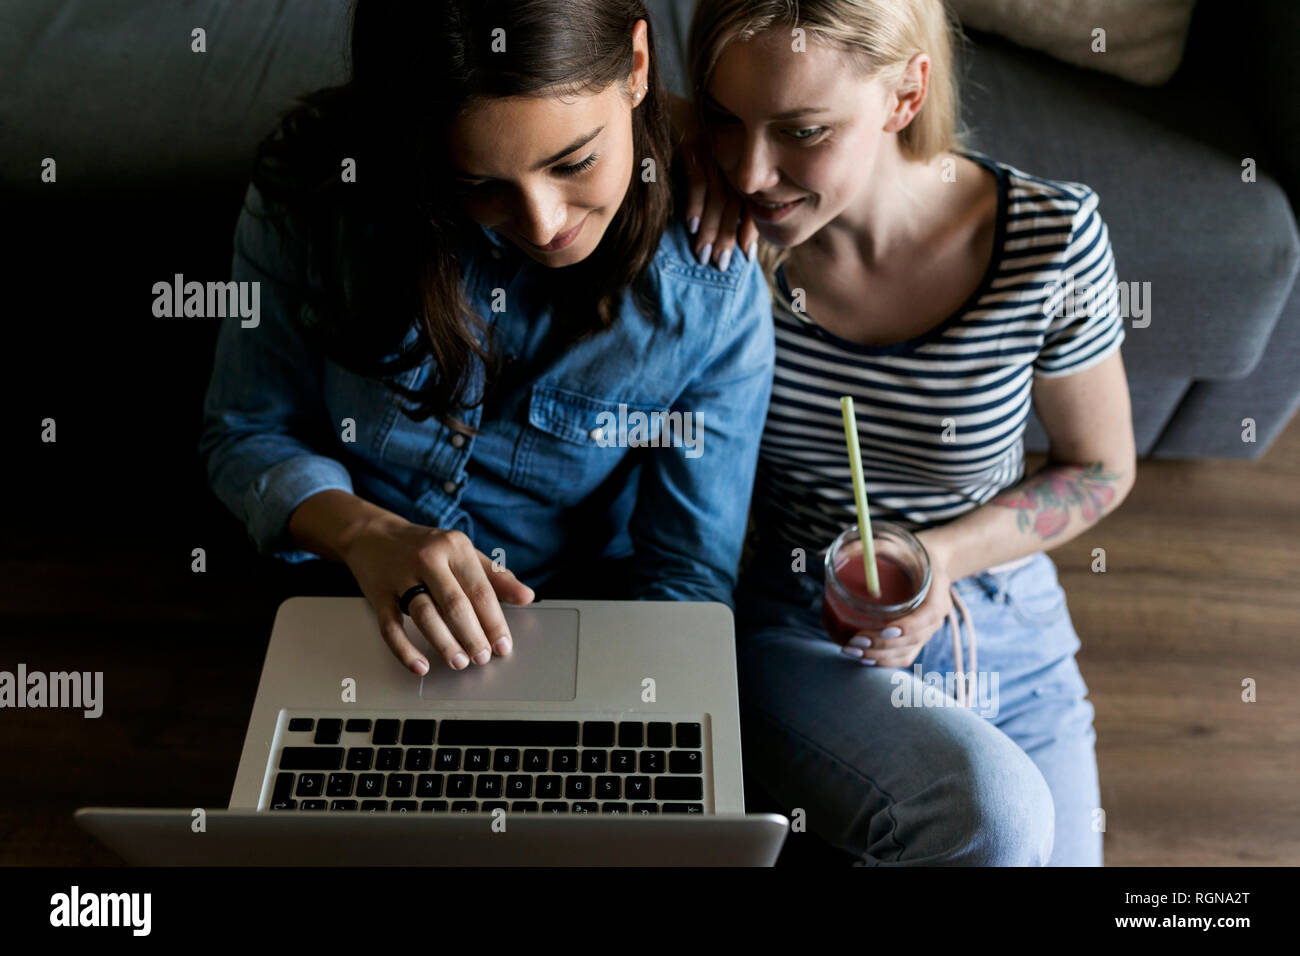 Deux jeunes femmes smiling sitting on floor with laptop partage de boissons gazeuses Banque D'Images